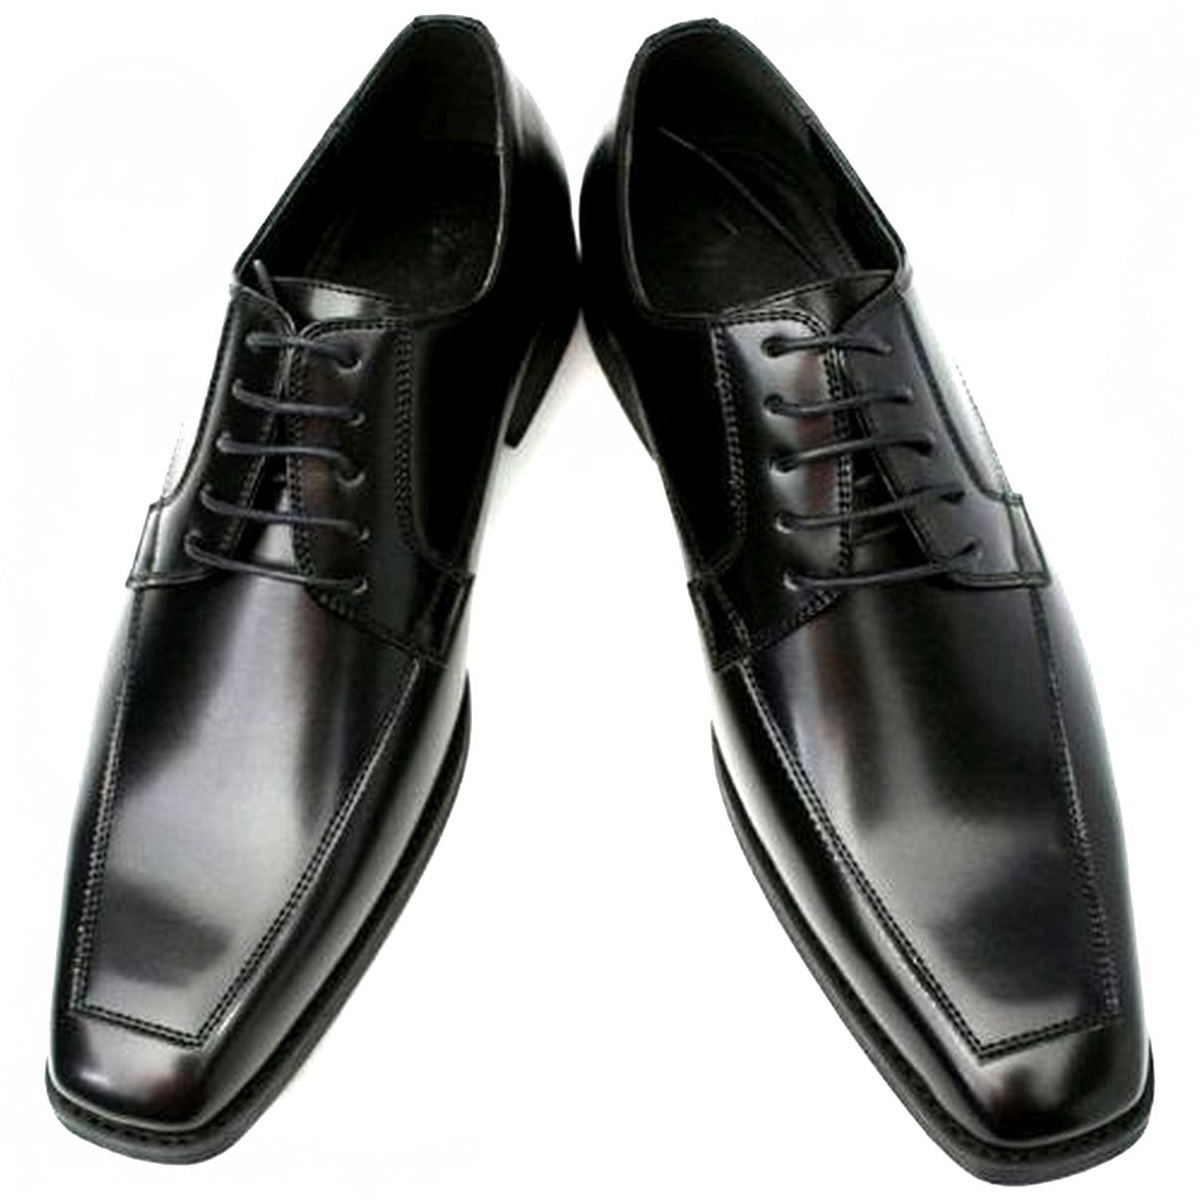 黒 26.5cm お手入れ簡単 雨に強い合皮ビジネスシューズ スタイリッシュ紳士靴 ゆったり幅広 某有名靴メーカー同工場制作 本州送料無料 101_画像3